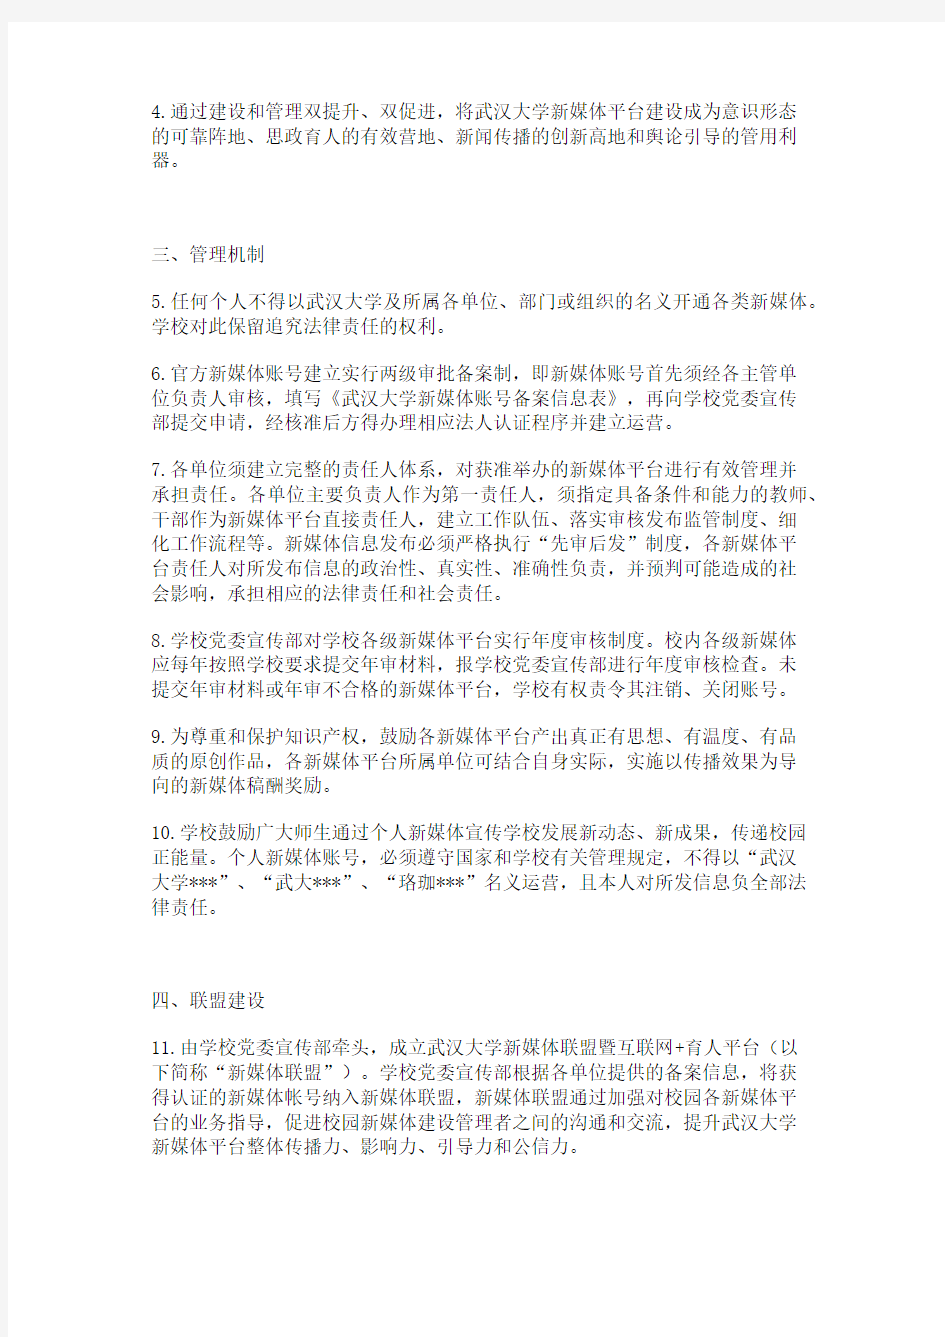 武汉大学新媒体平台建设管理暂行办法